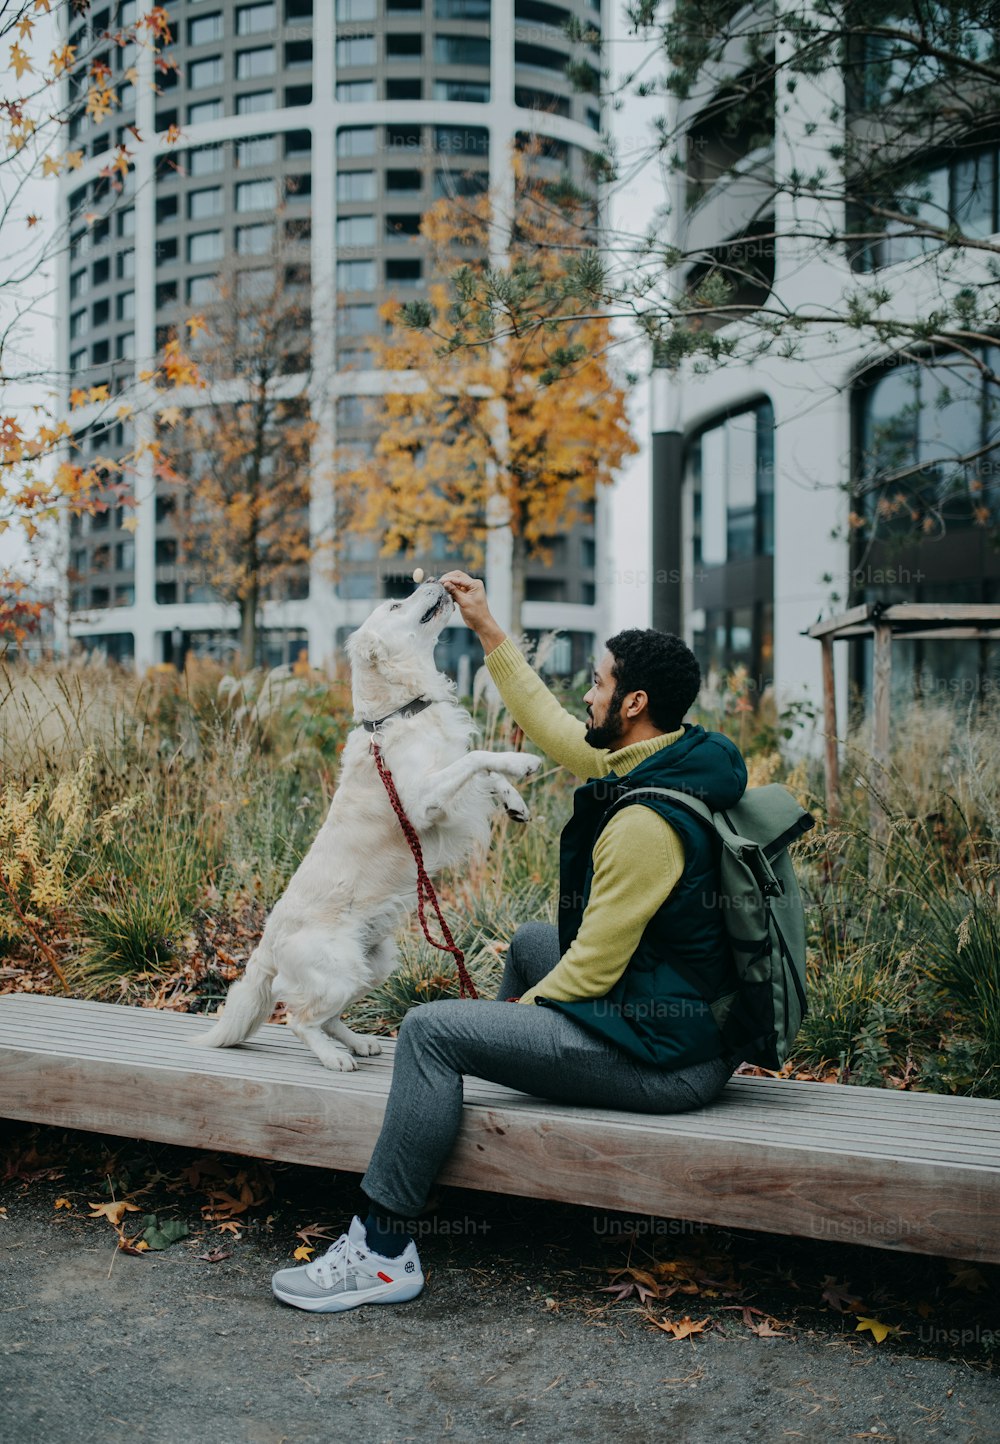 Una vista laterale di un giovane seduto su una panchina e che addestra il suo cane all'aperto in città.